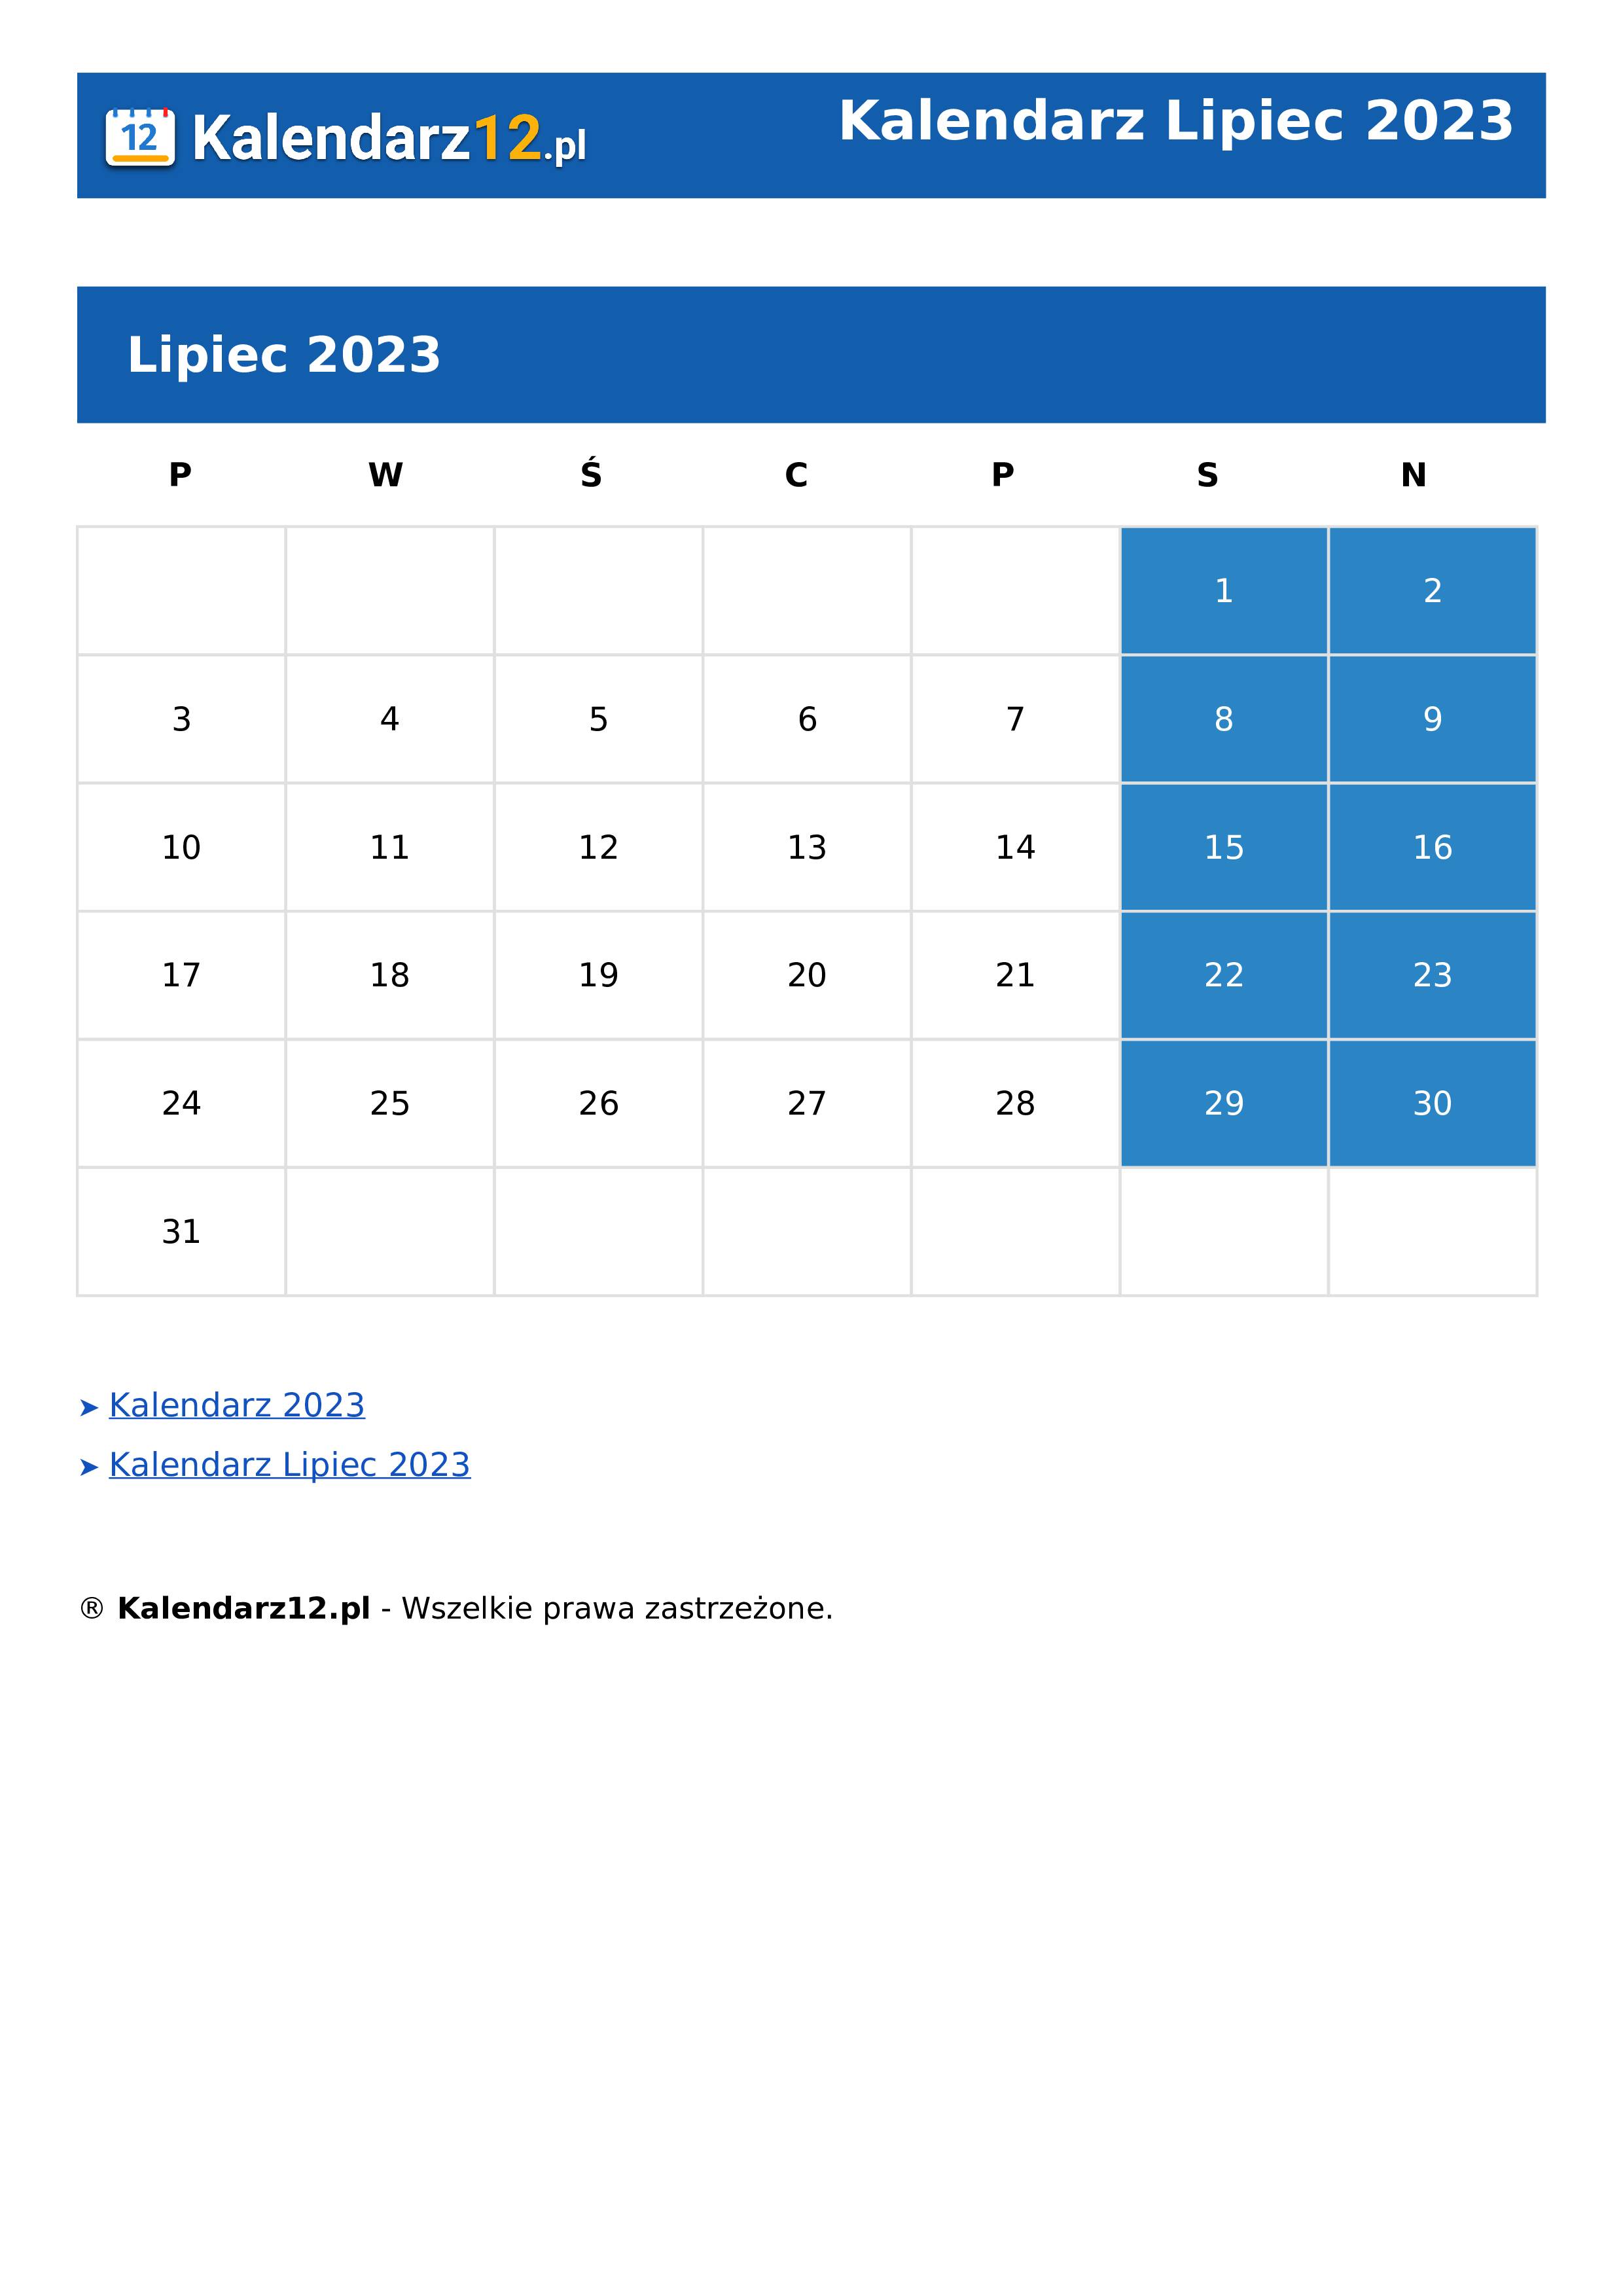 Calendar Lipiec 2023